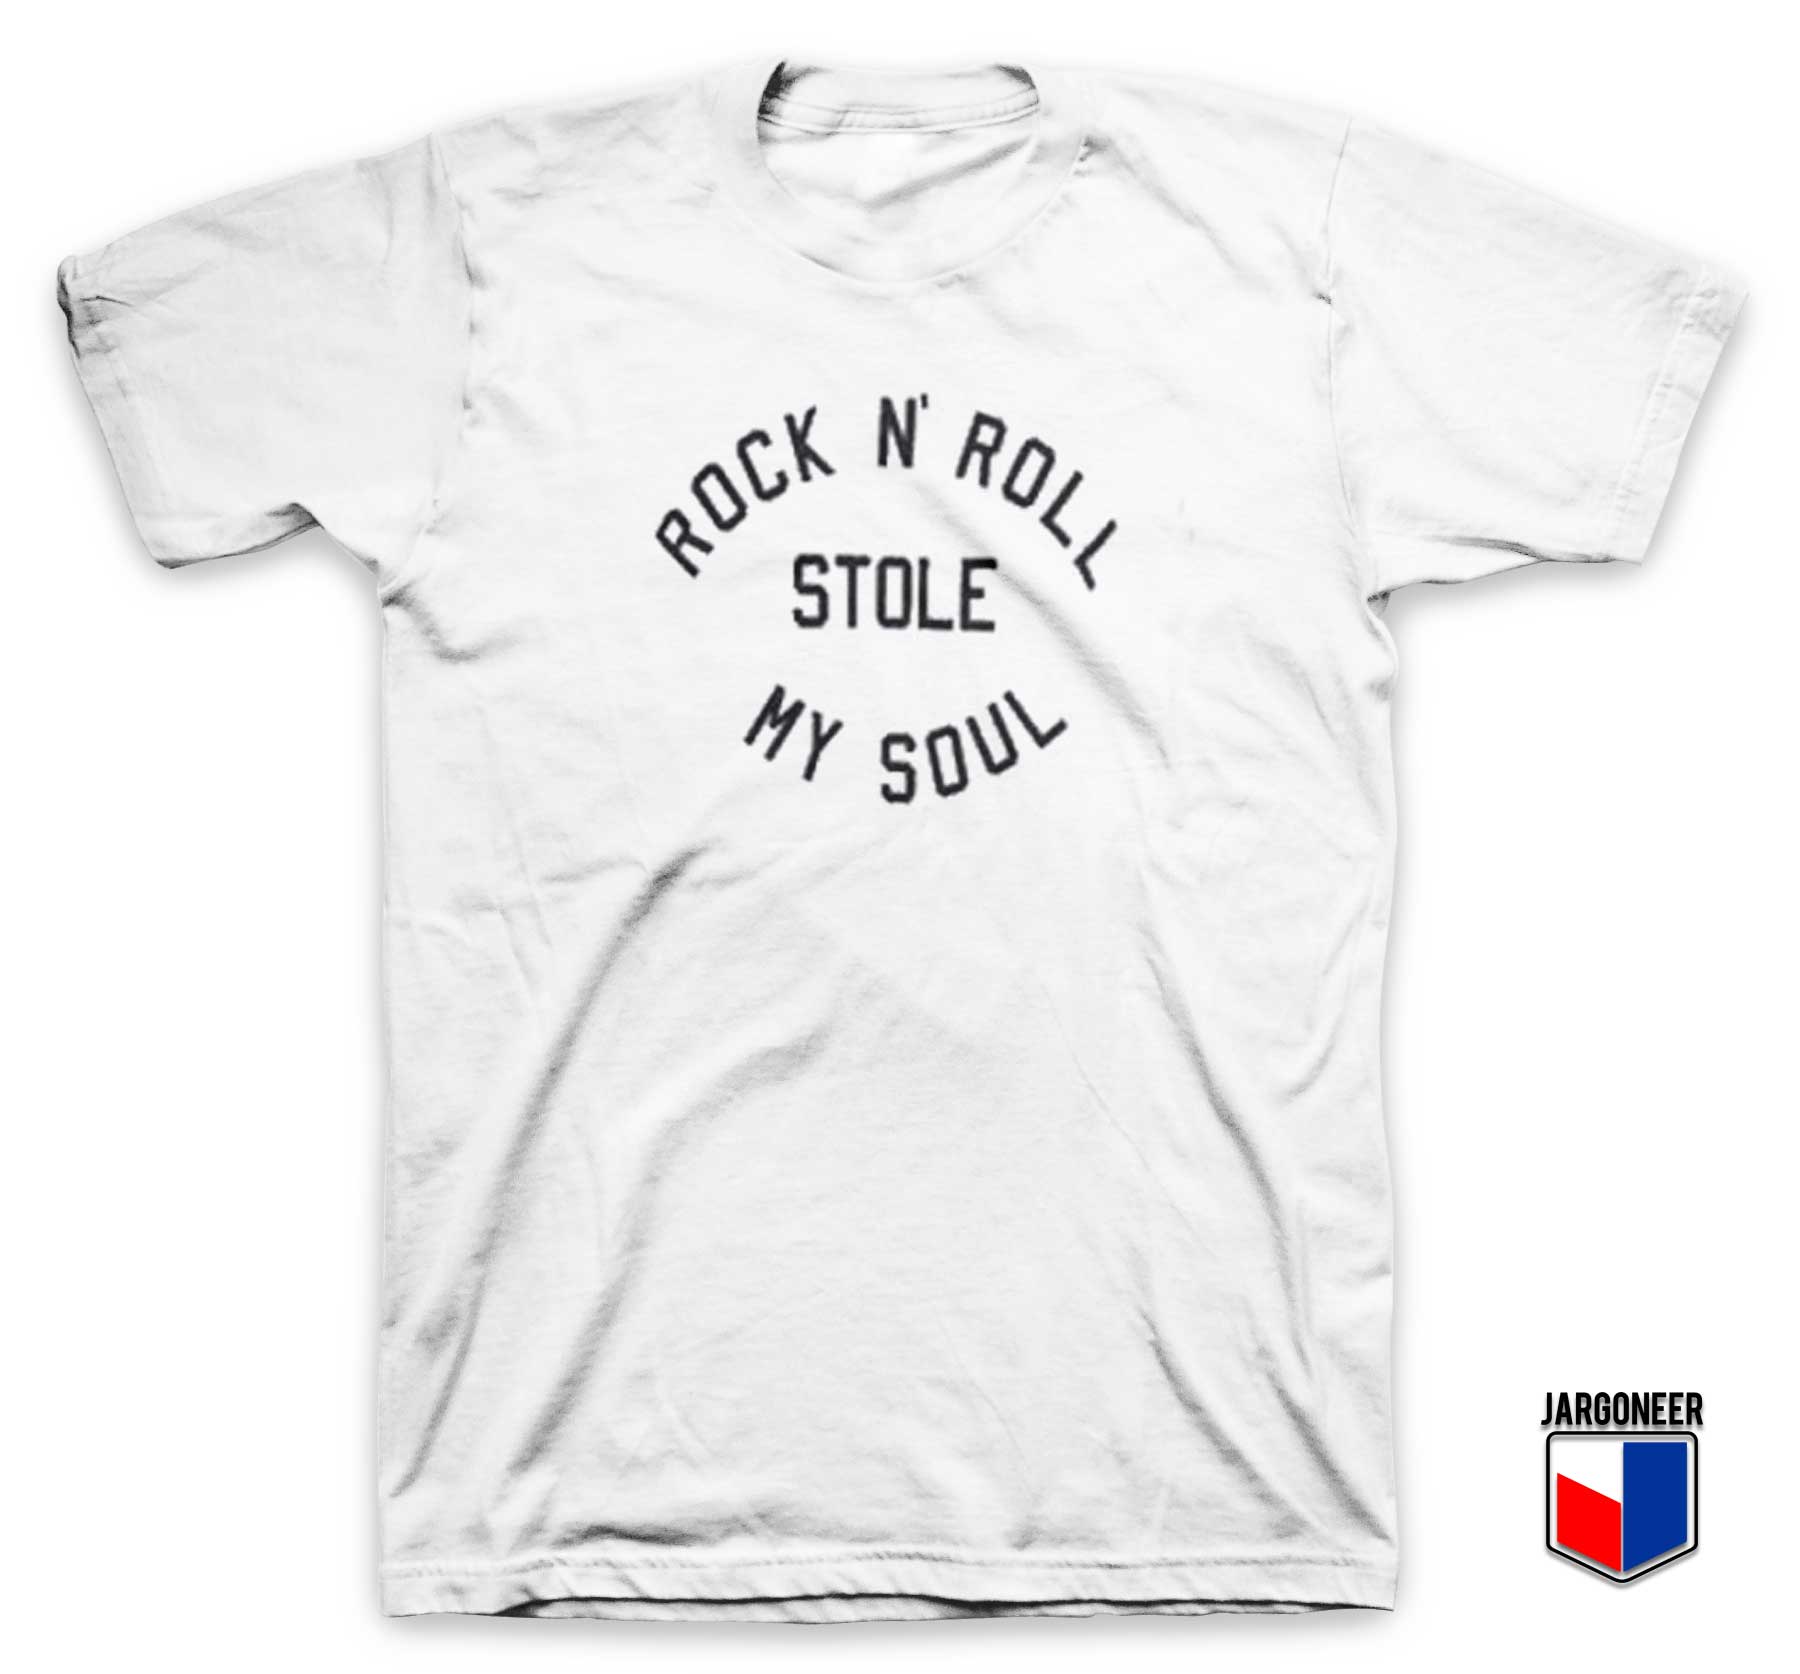 Rock N Roll Stole My Soul T Shirt - Shop Unique Graphic Cool Shirt Designs